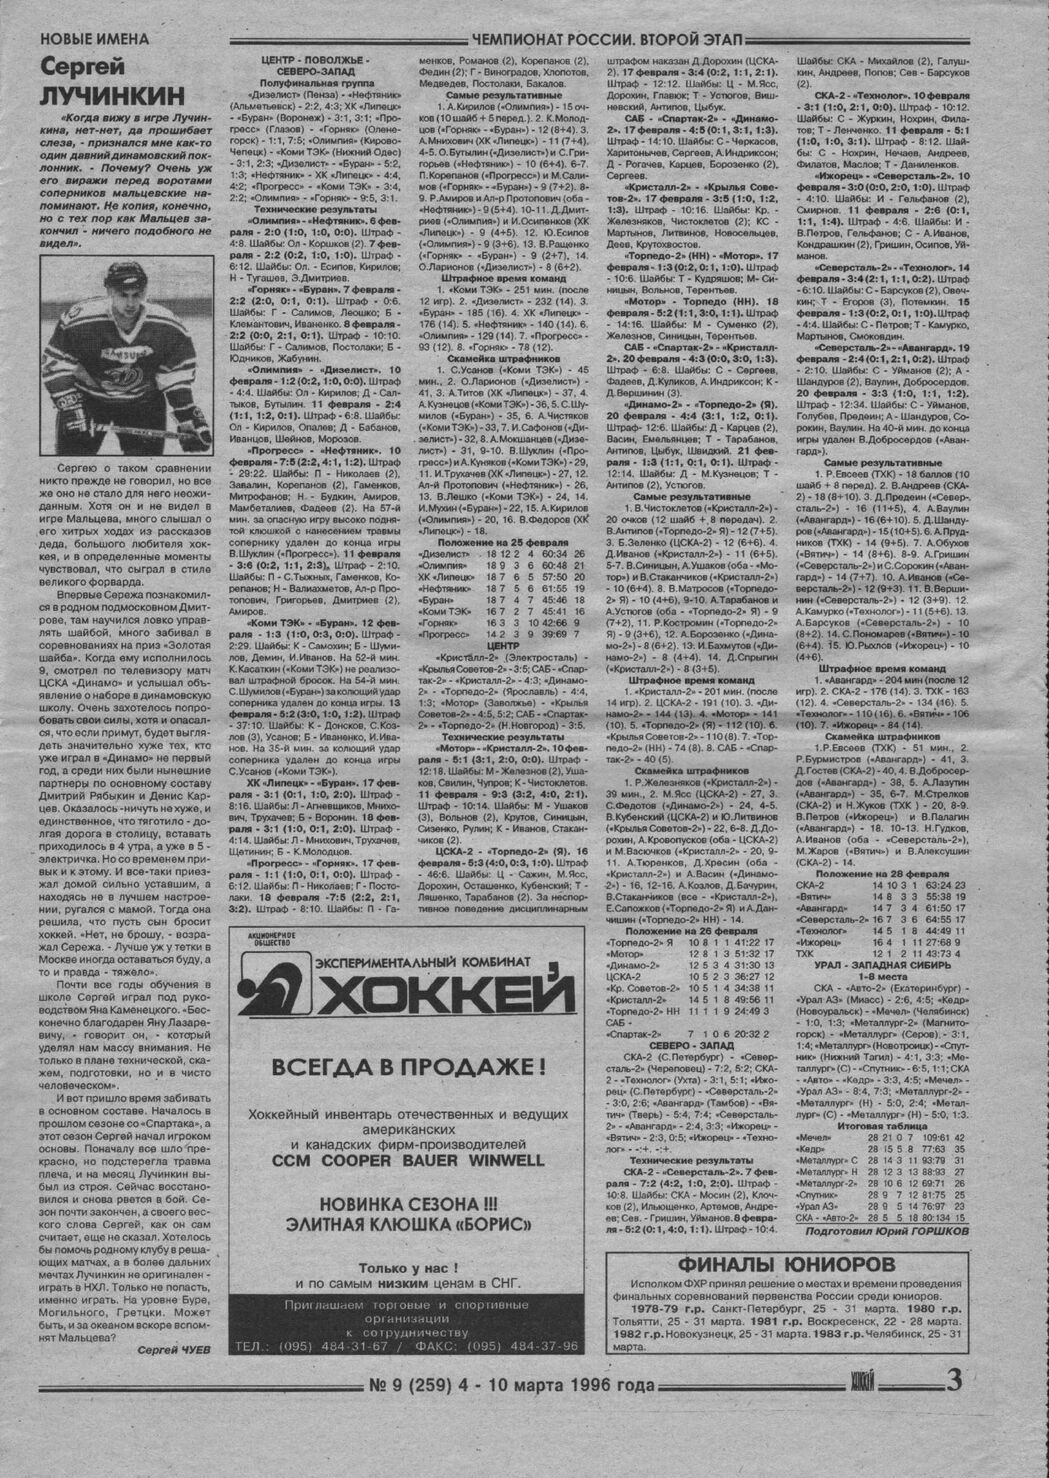 Еженедельник "Хоккей" от 1995г.